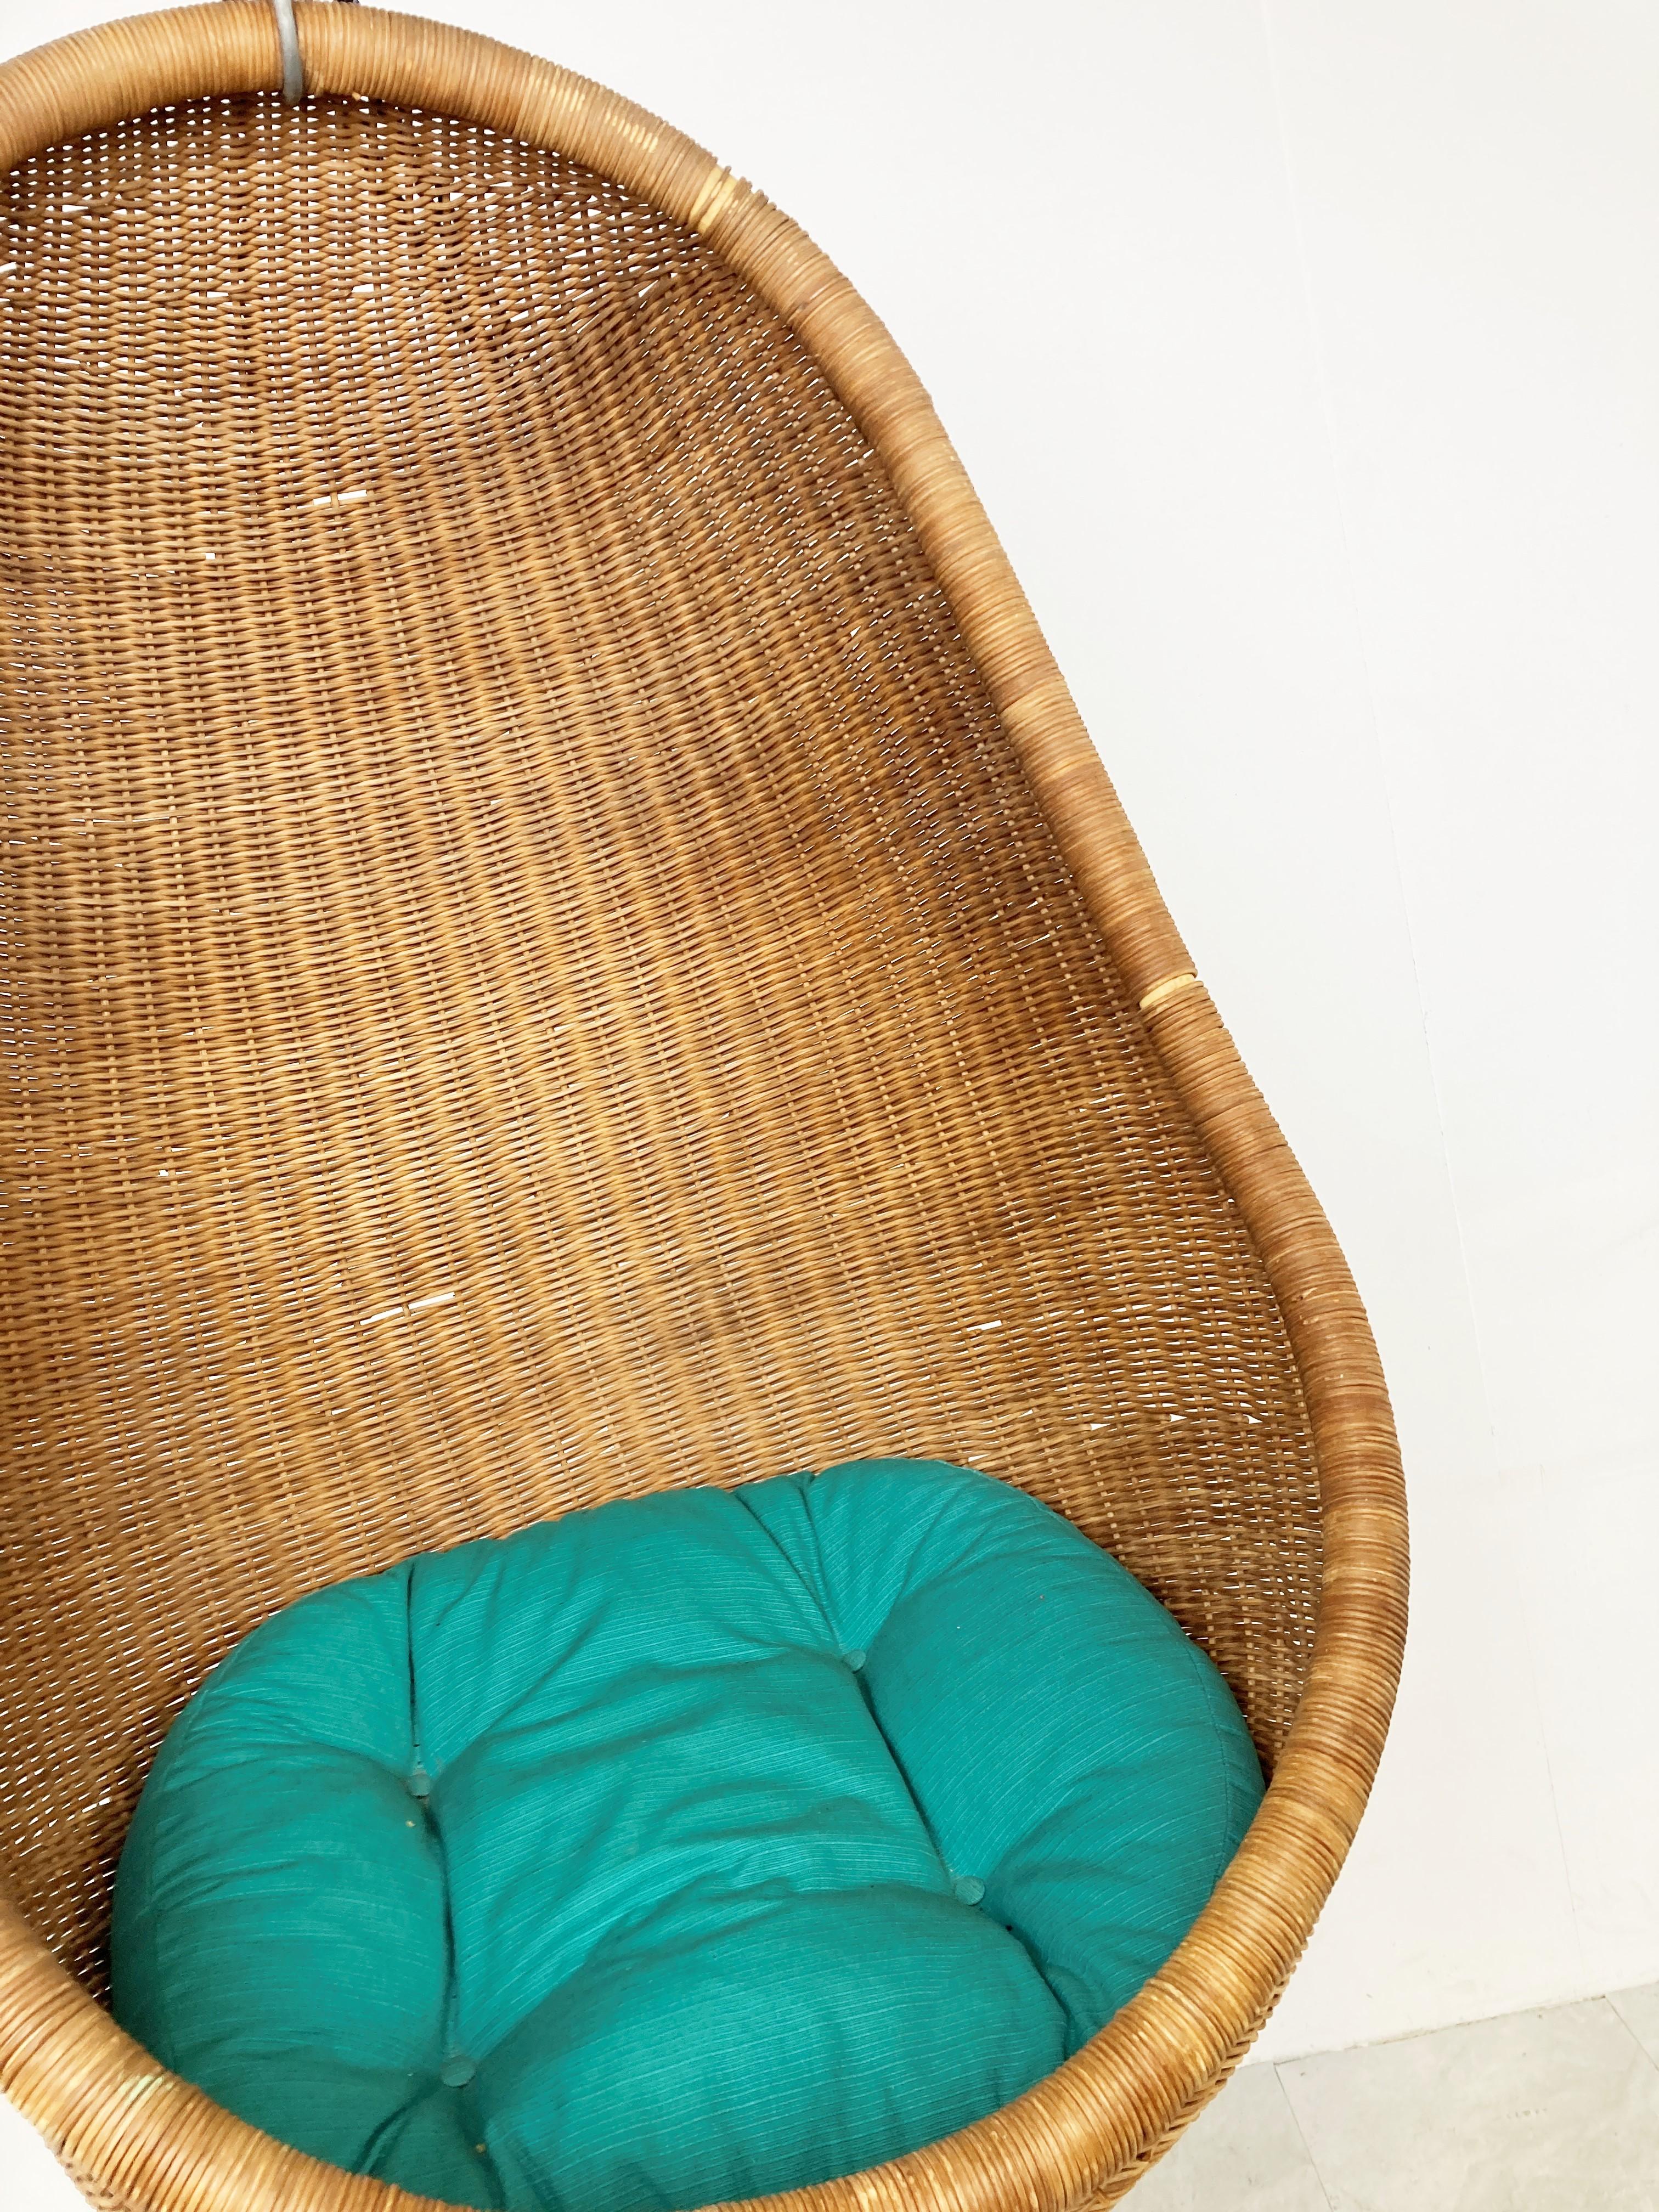 Chaise ovoïde suspendue en osier du milieu du siècle par Nanna Ditzel.

Magnifique et très originale chaise longue au design intemporel.

Il est suspendu au plafond par une chaîne. Nous pouvons ajuster la chaîne à la hauteur que vous